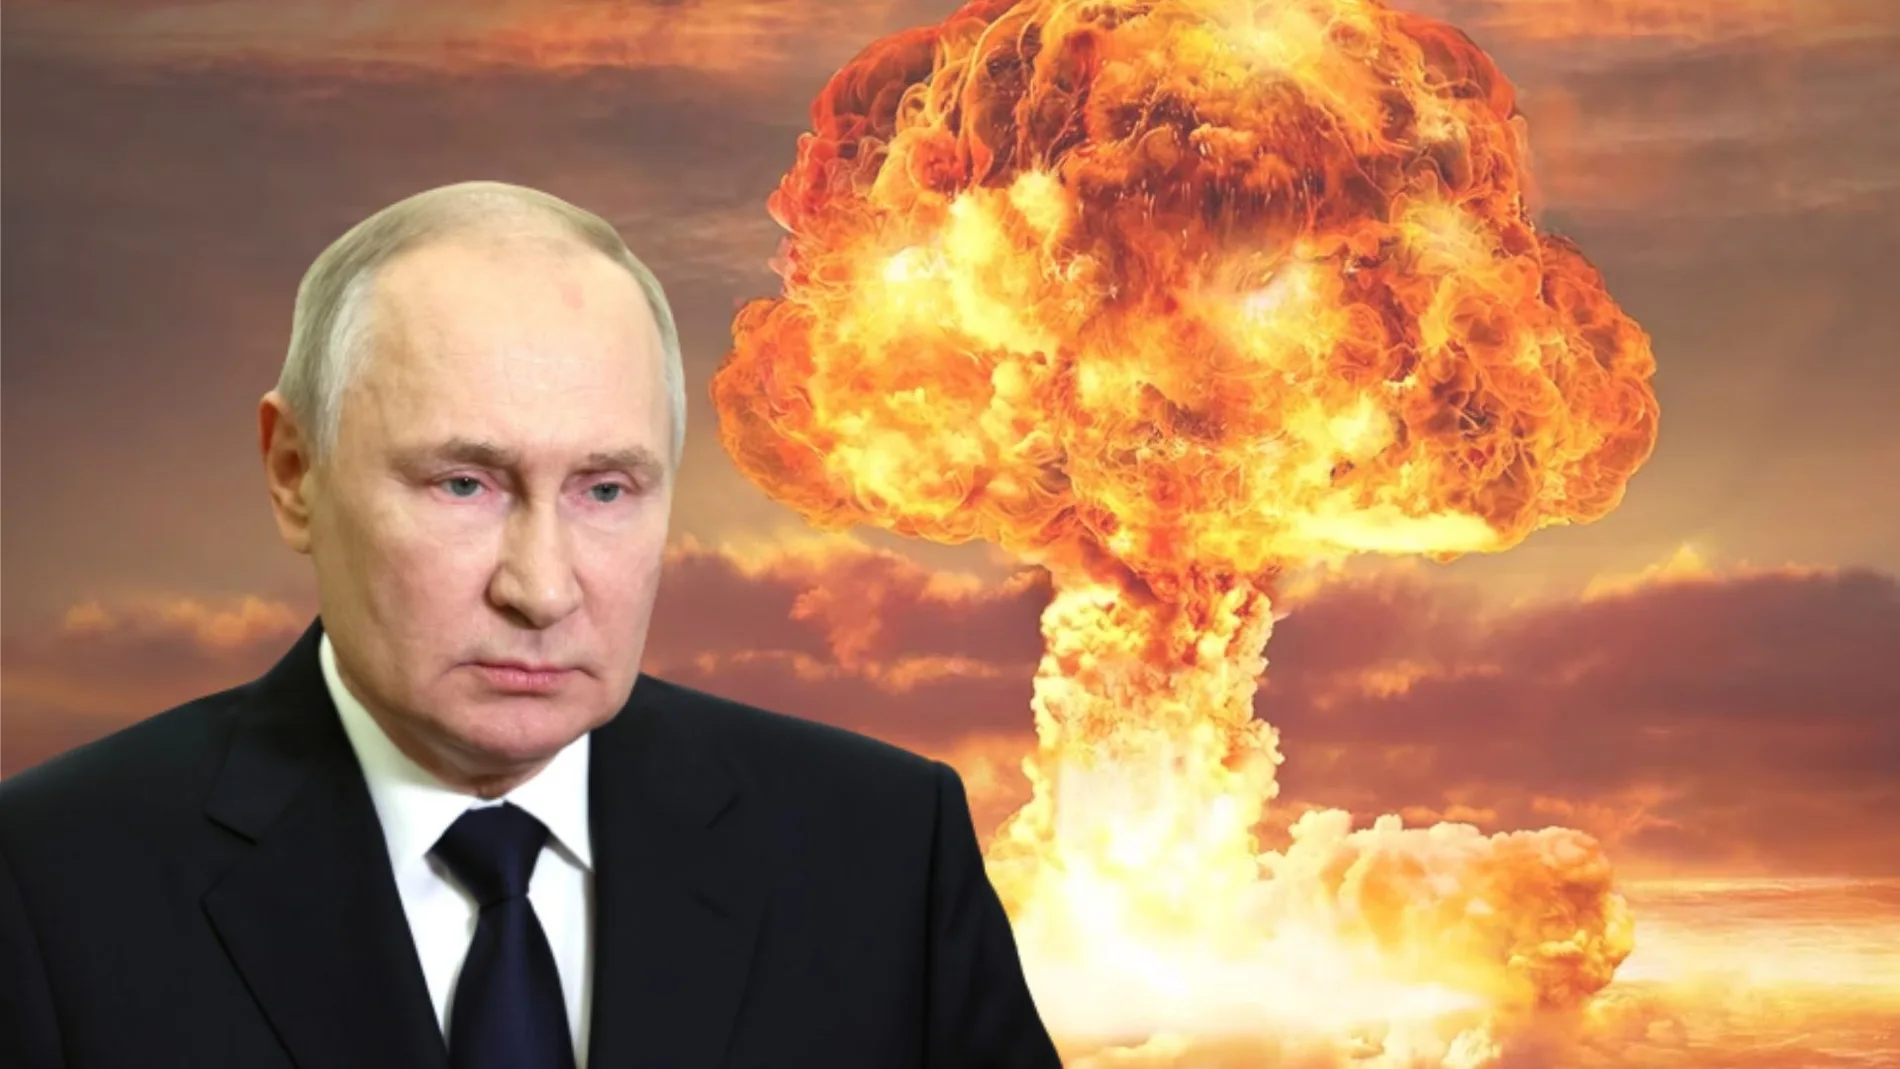 Simulacro de ataque nuclear de Rusia: afectaría a 11 zonas horarias distintas